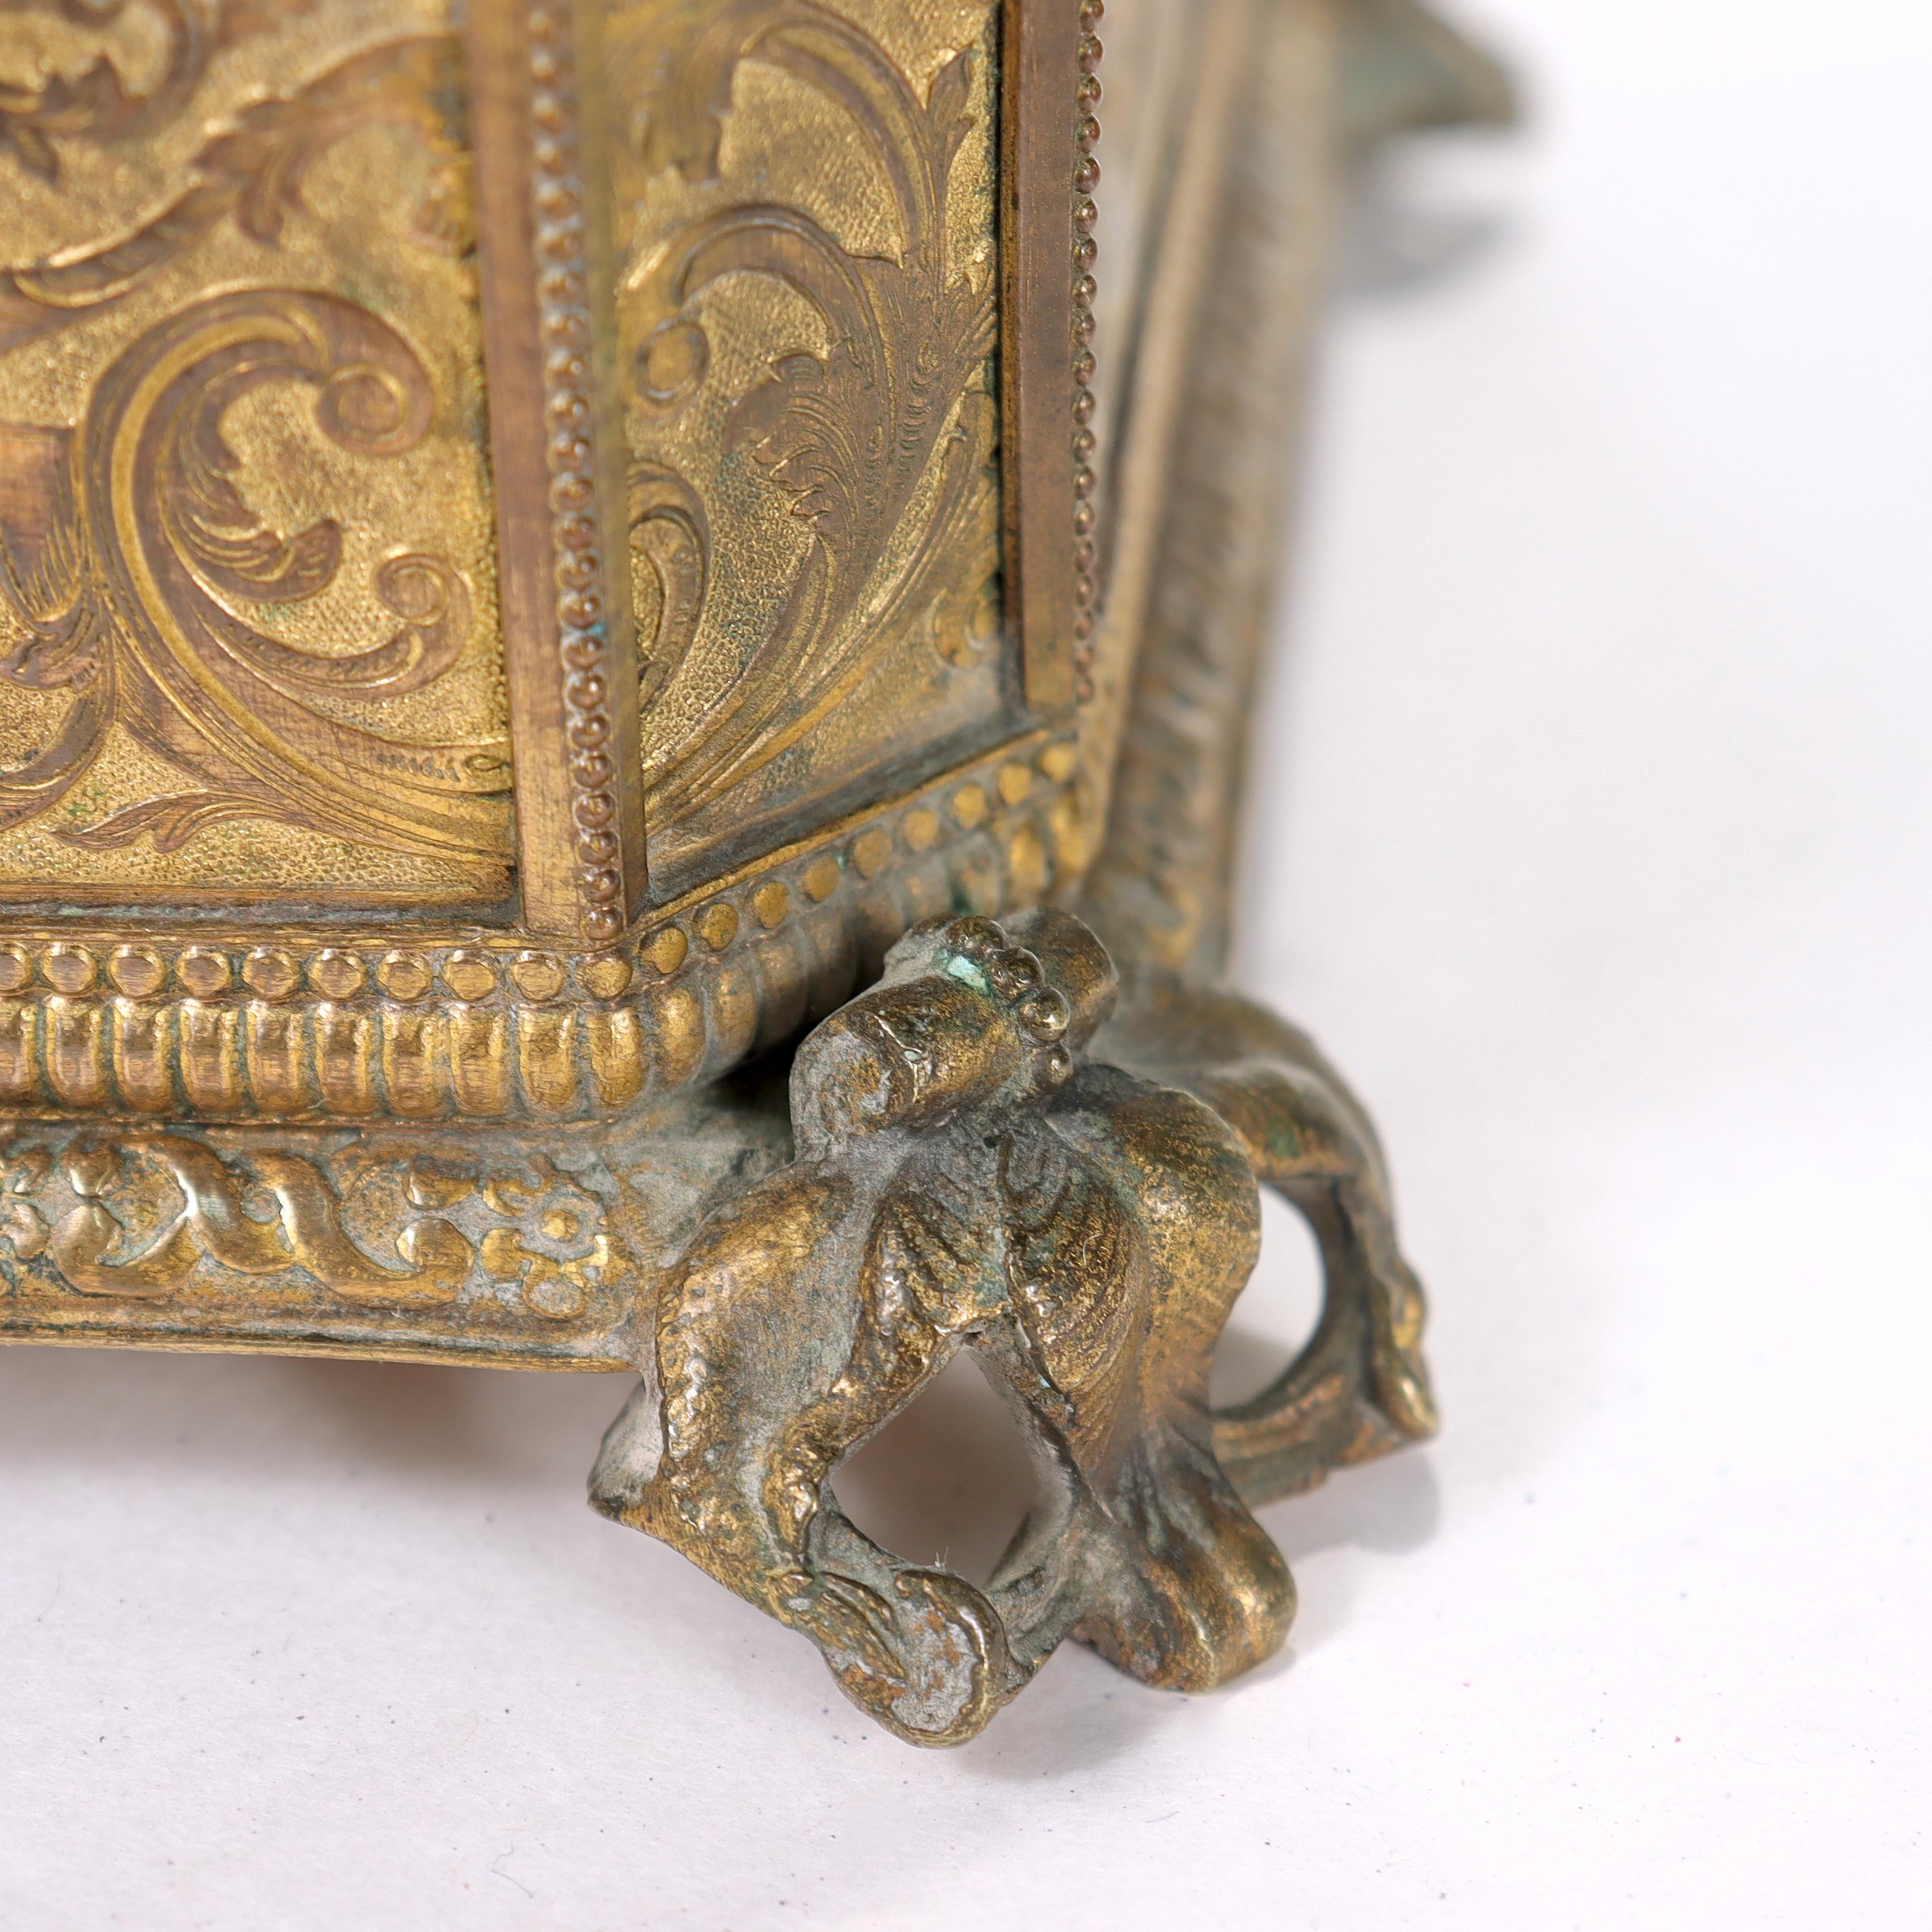 Antique 19th Century Brass Renaissance Revival Casket or Table Box For Sale 16